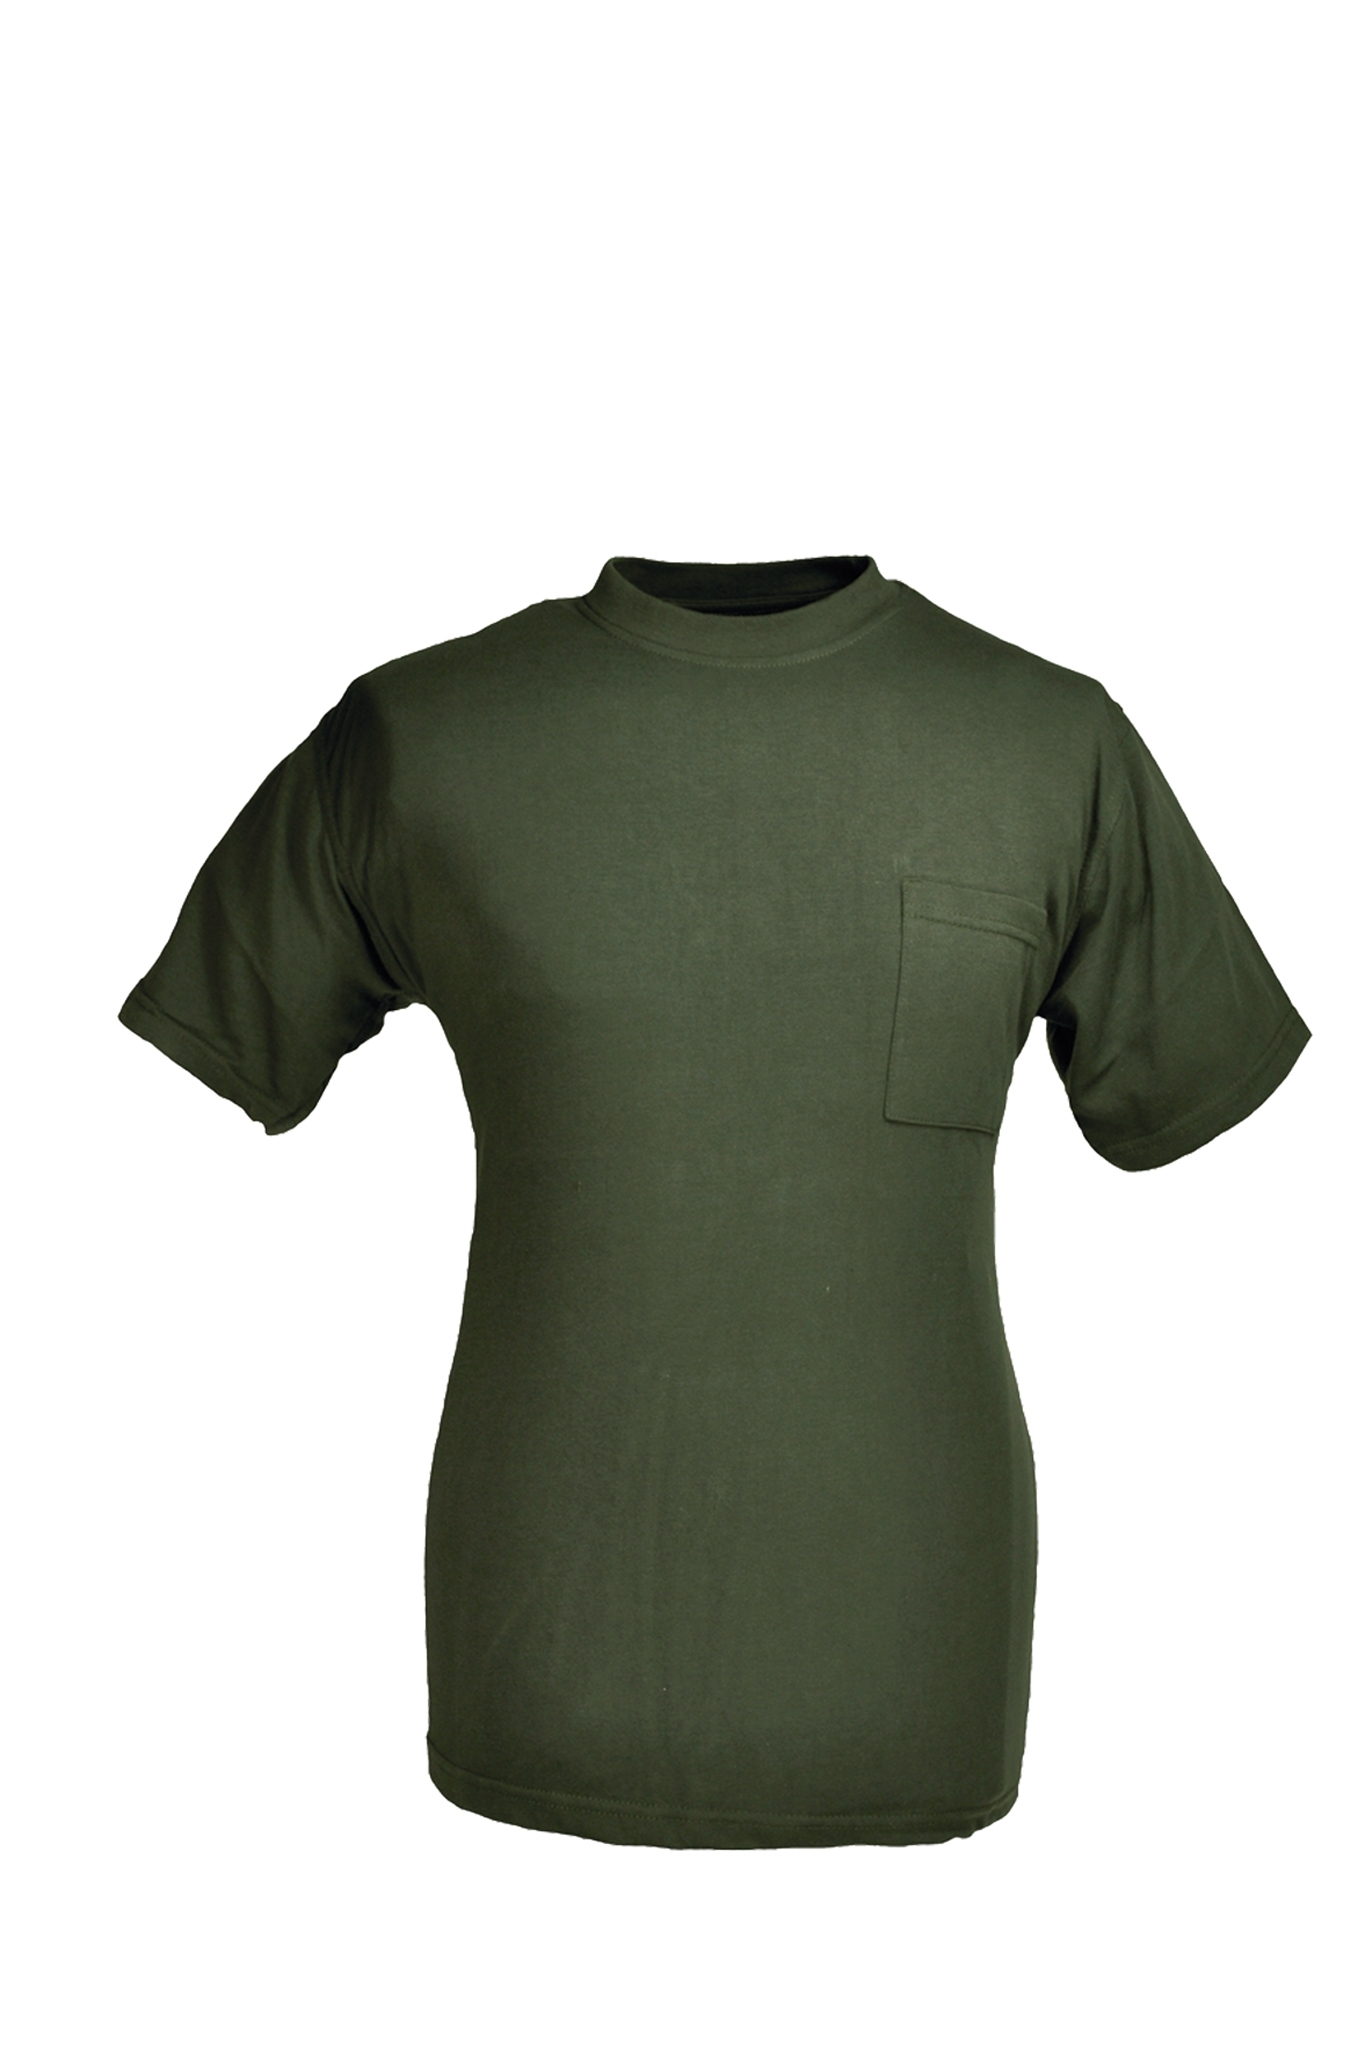 Rundhals T-Shirt oliv Gr.5XL 10227843